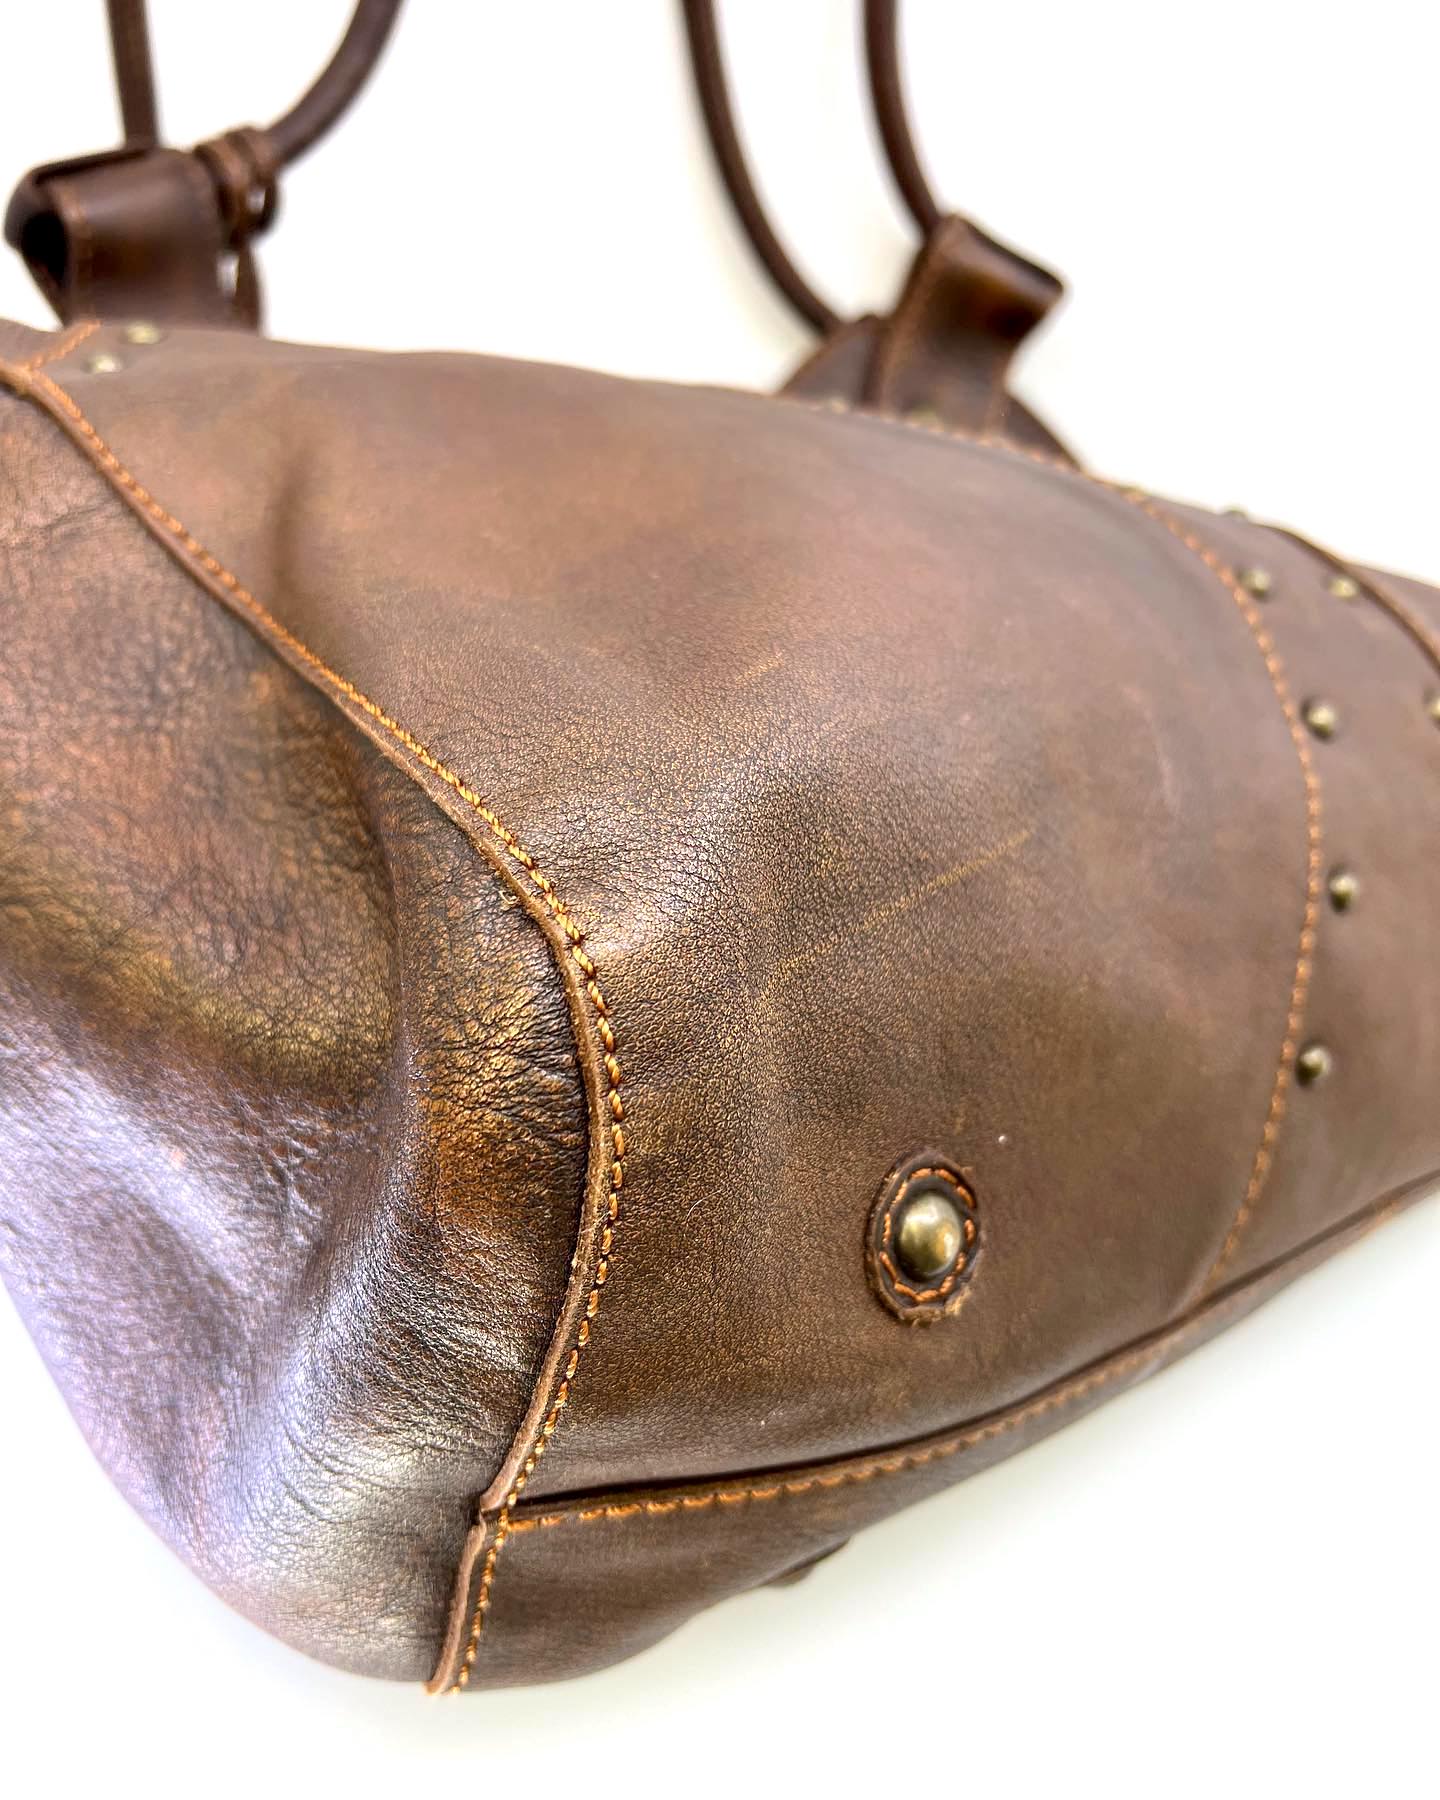 Frye Leather Saddle Flap Bag Satchel Cognac Brown Cross Purse Vintage  Shoulder | eBay